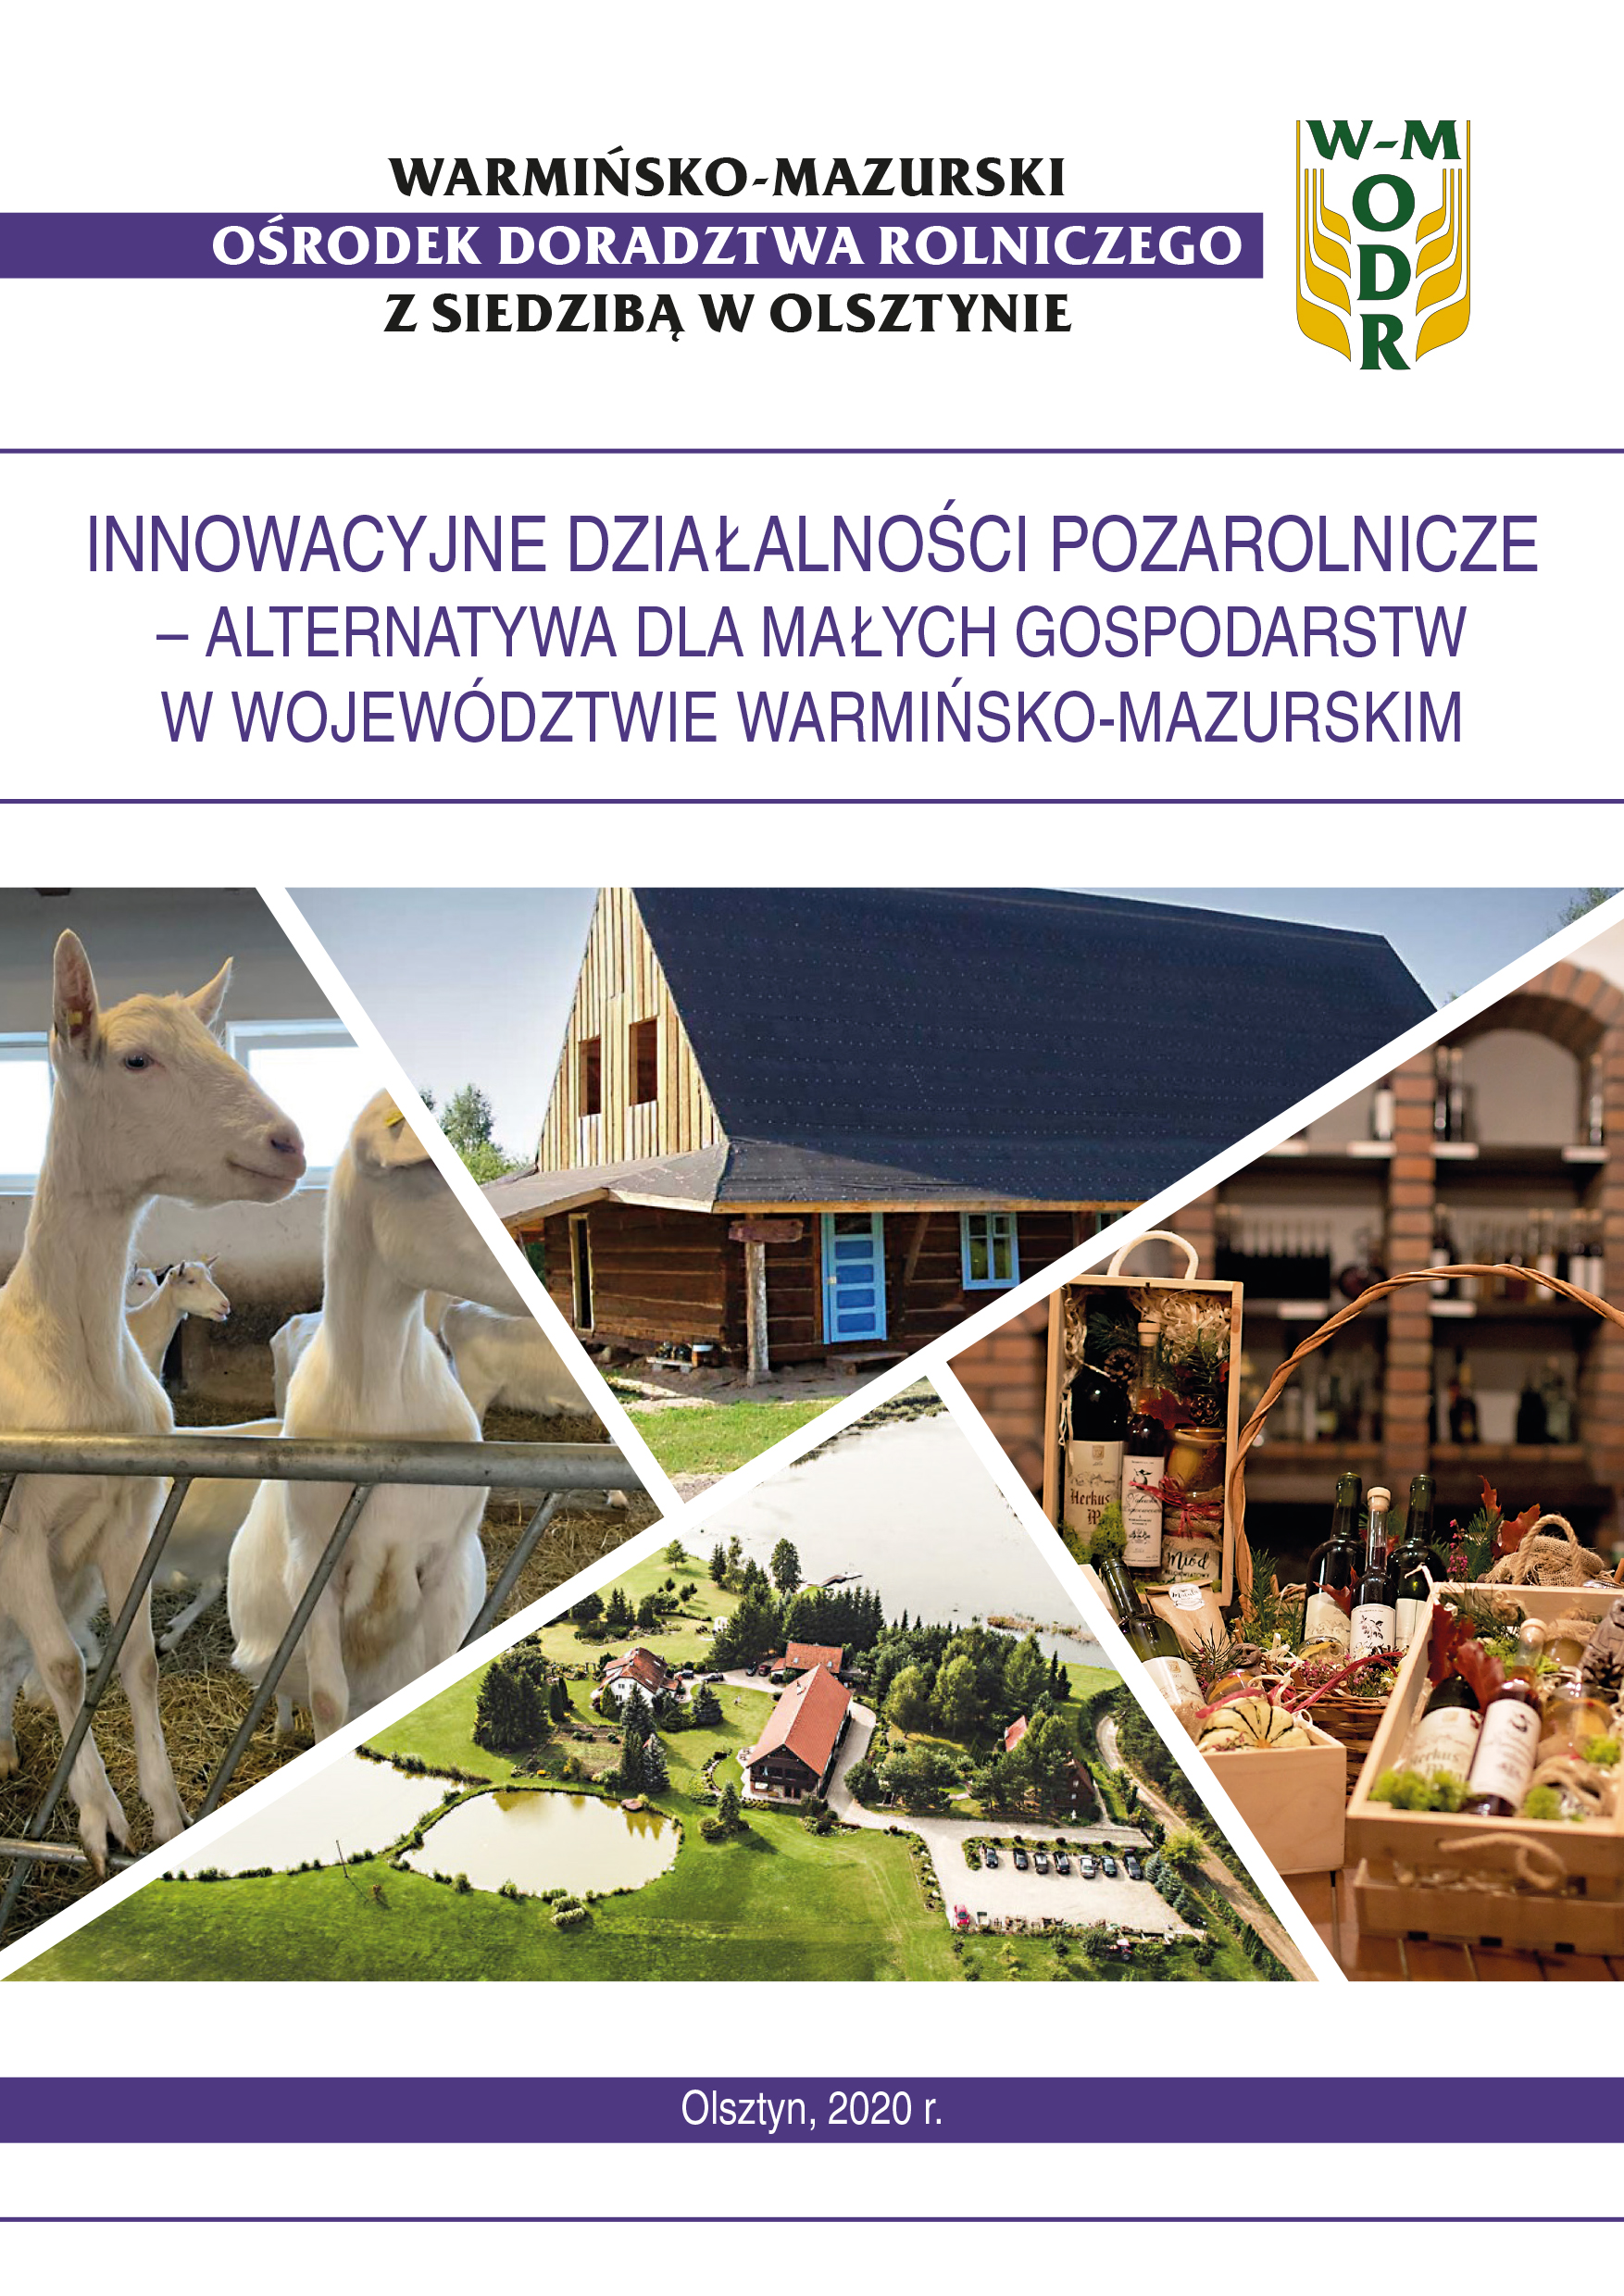 Innowacyjne działalności pozarolnicze – alternatywa dla małych gospodarstw w województwie warmińsko-mazurskim